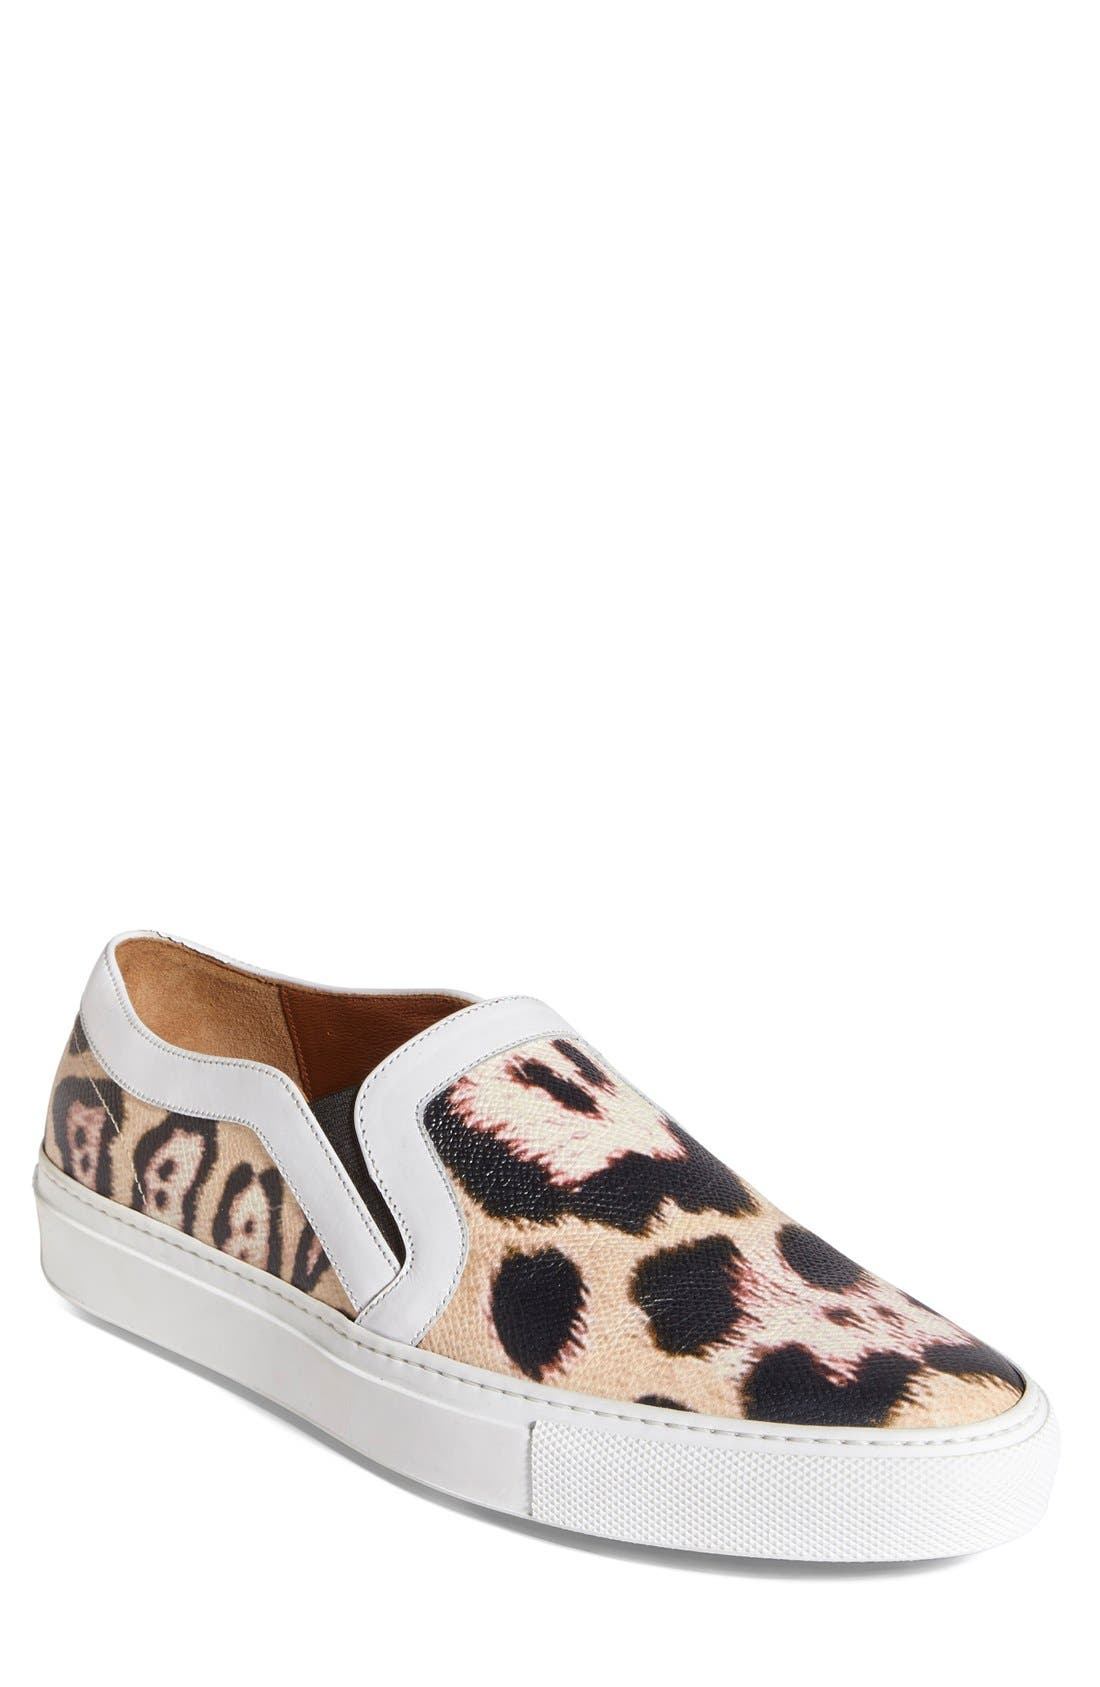 womens slip on leopard sneakers